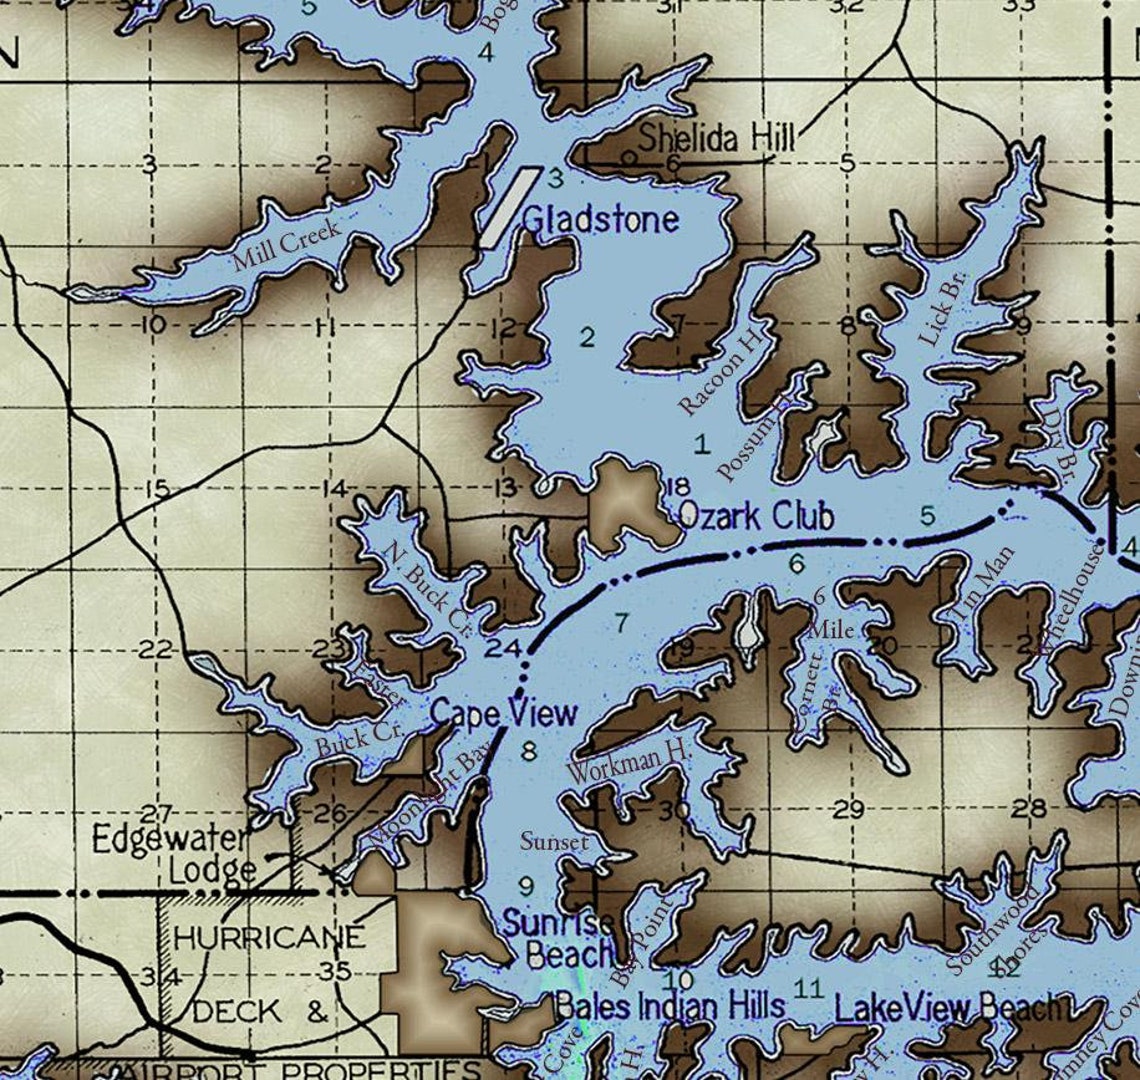 Lake Of The Ozarks Printable Map